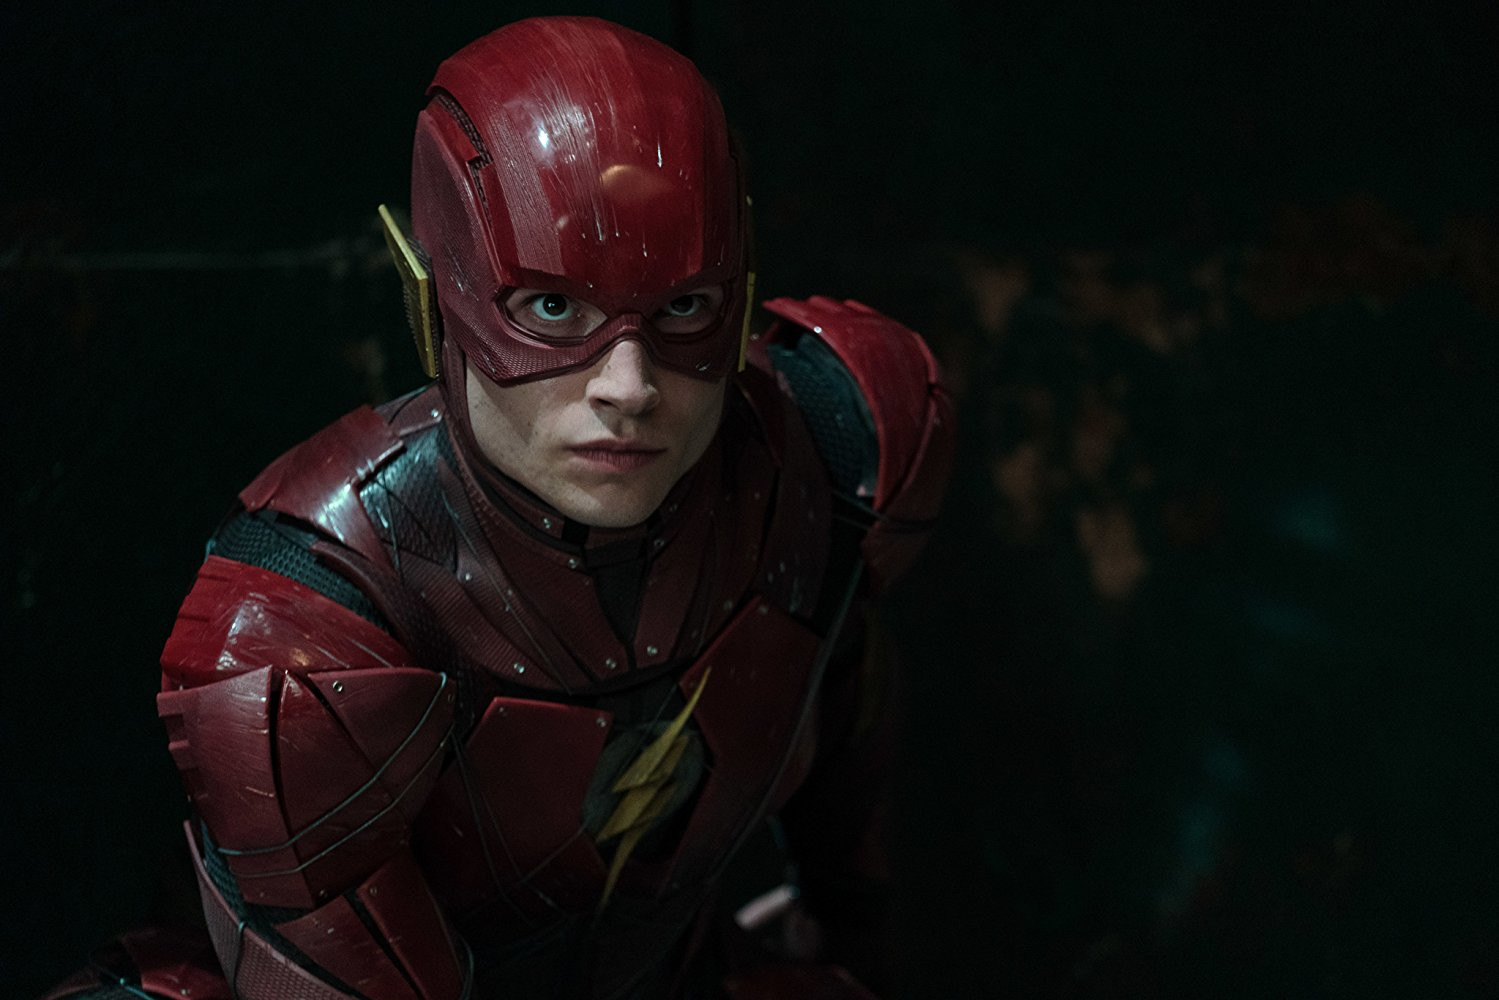  The Flash prend du retard à cause de… ses technologies révolutionnaires